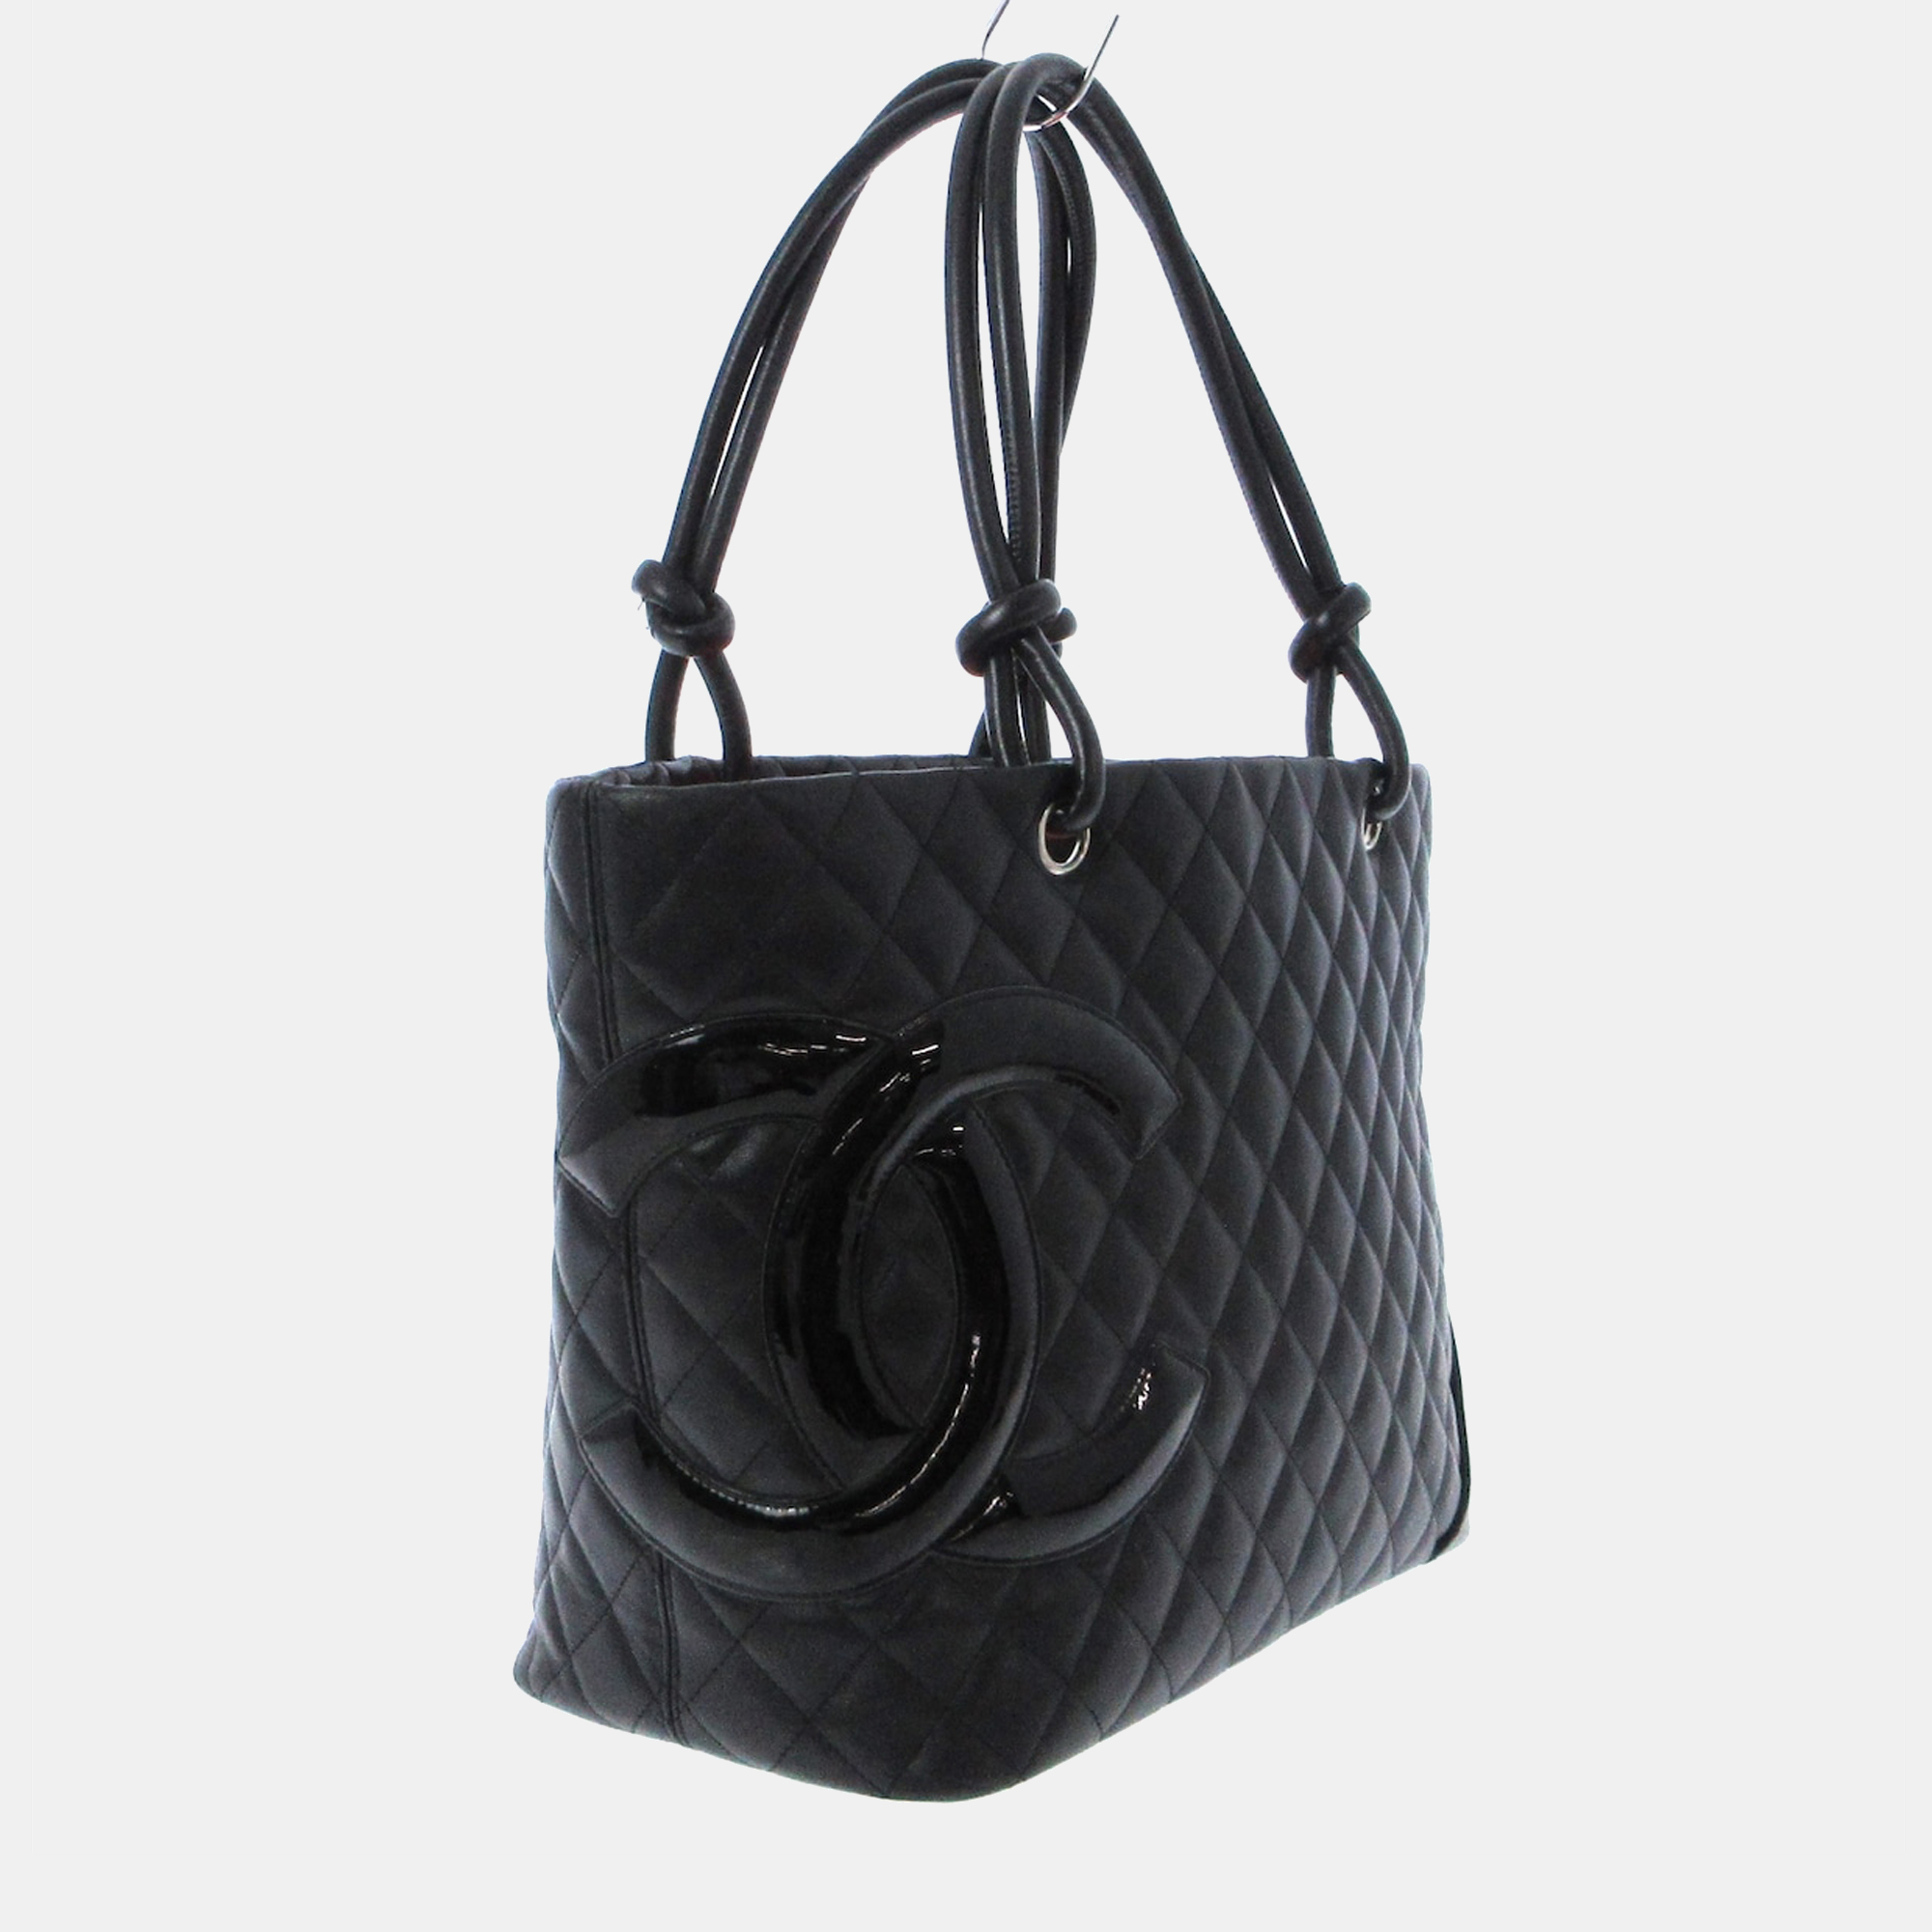 

Chanel Black Leather CC Cambon tote Bag